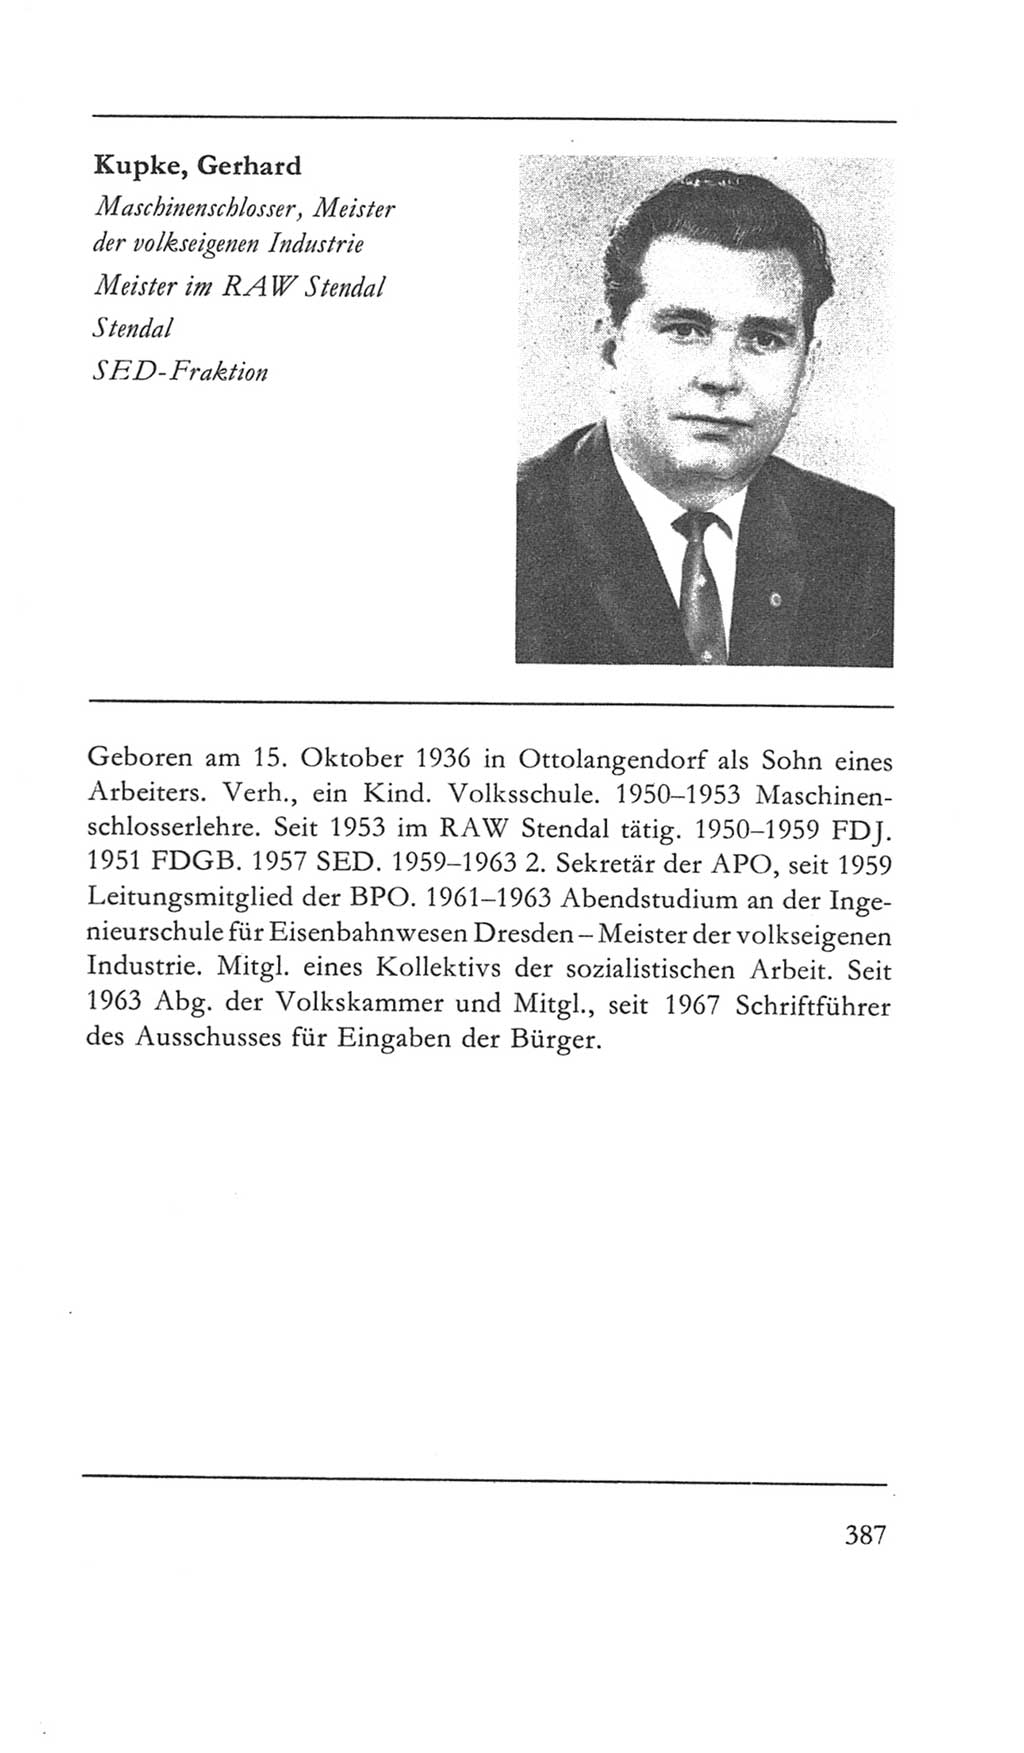 Volkskammer (VK) der Deutschen Demokratischen Republik (DDR) 5. Wahlperiode 1967-1971, Seite 387 (VK. DDR 5. WP. 1967-1971, S. 387)